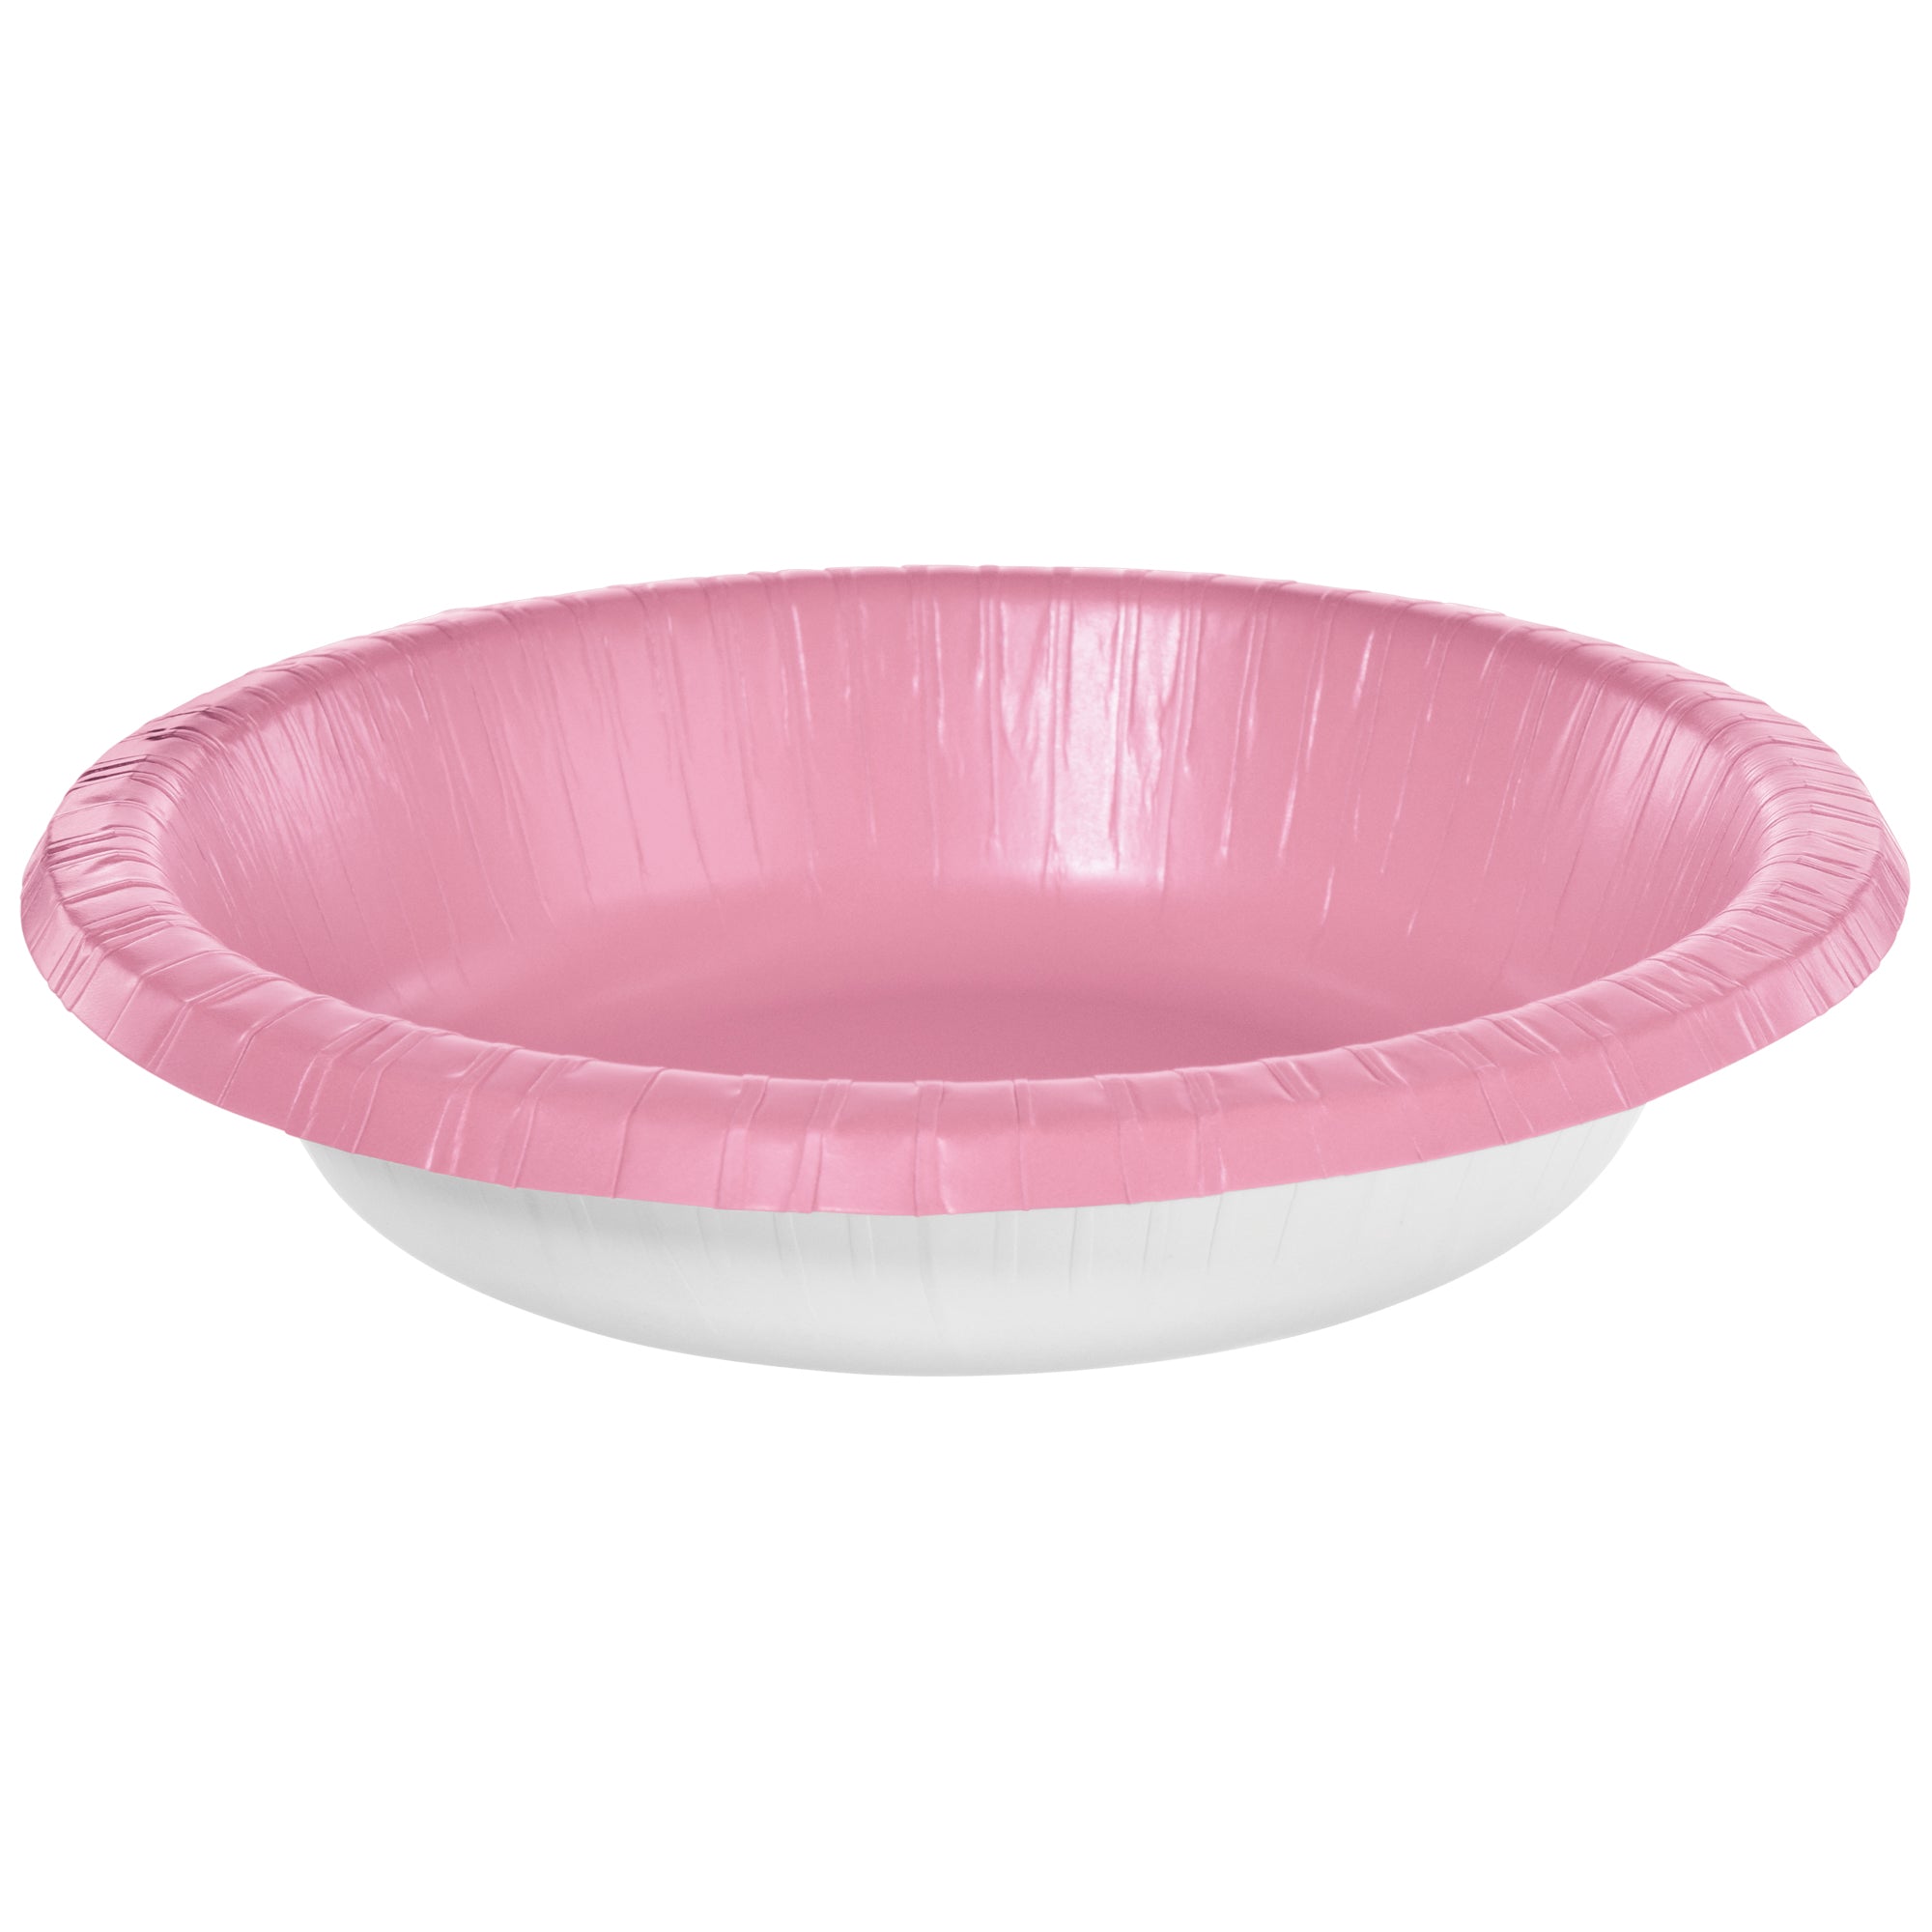 Paper Bowls  New Pink  20 pcs  20oz